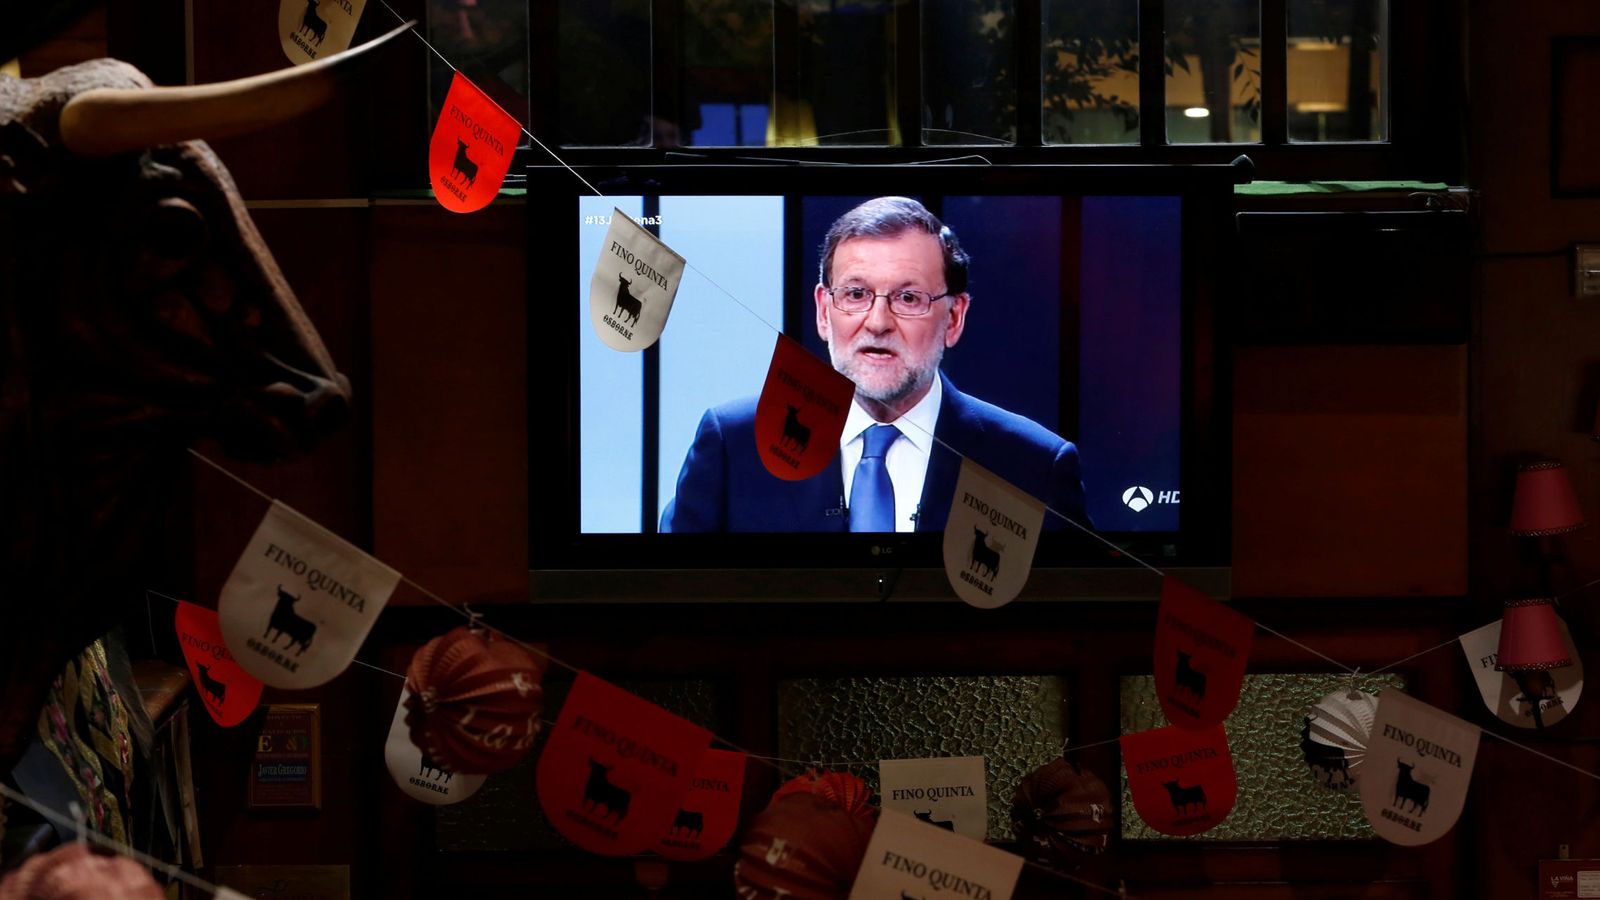 Foto: El líder del PP, Mariano Rajoy, en la pantalla de televisión de un restaurante durante el debate. (Reuters)